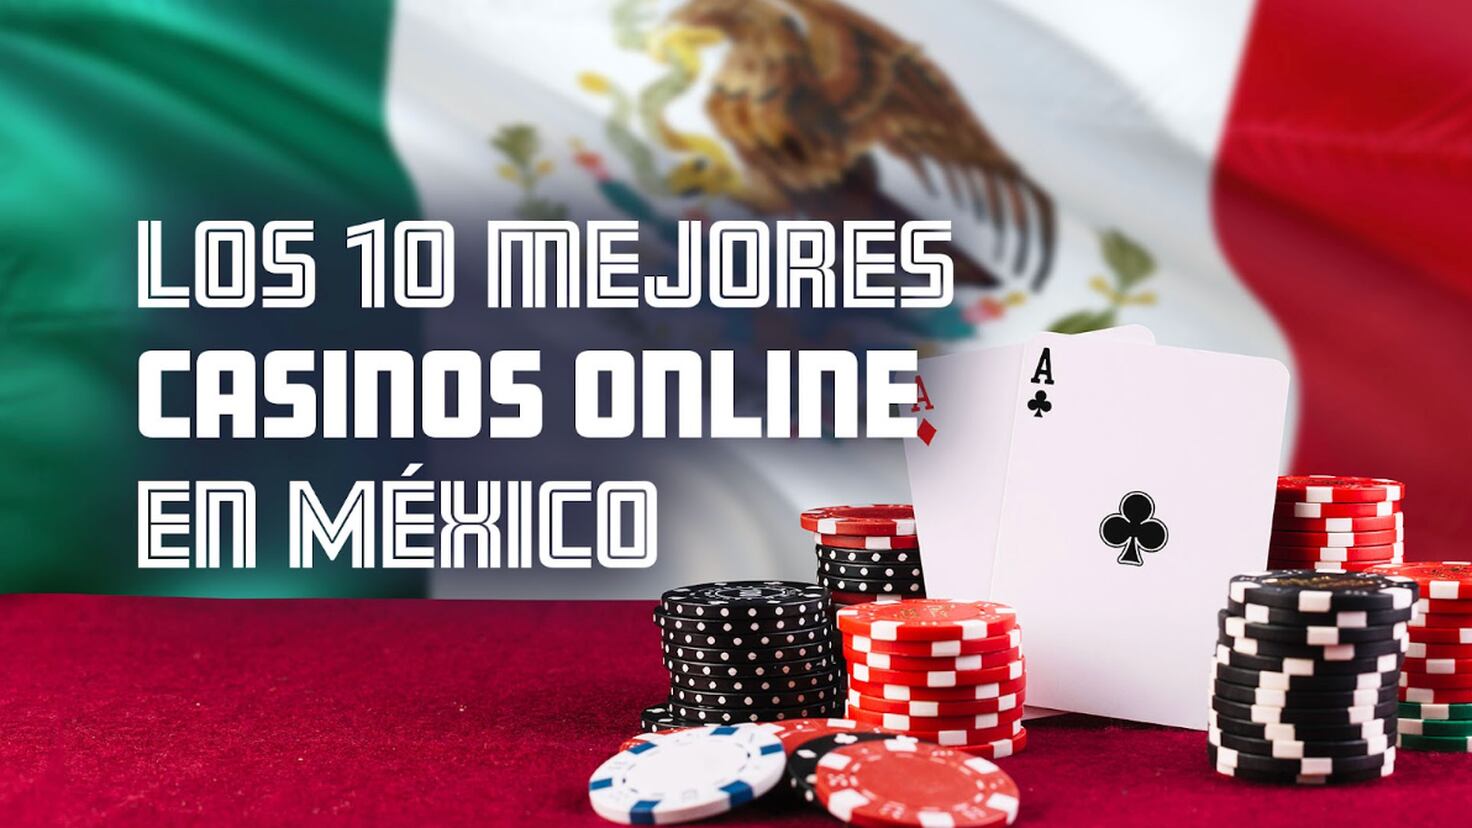 Casinos online en mexico